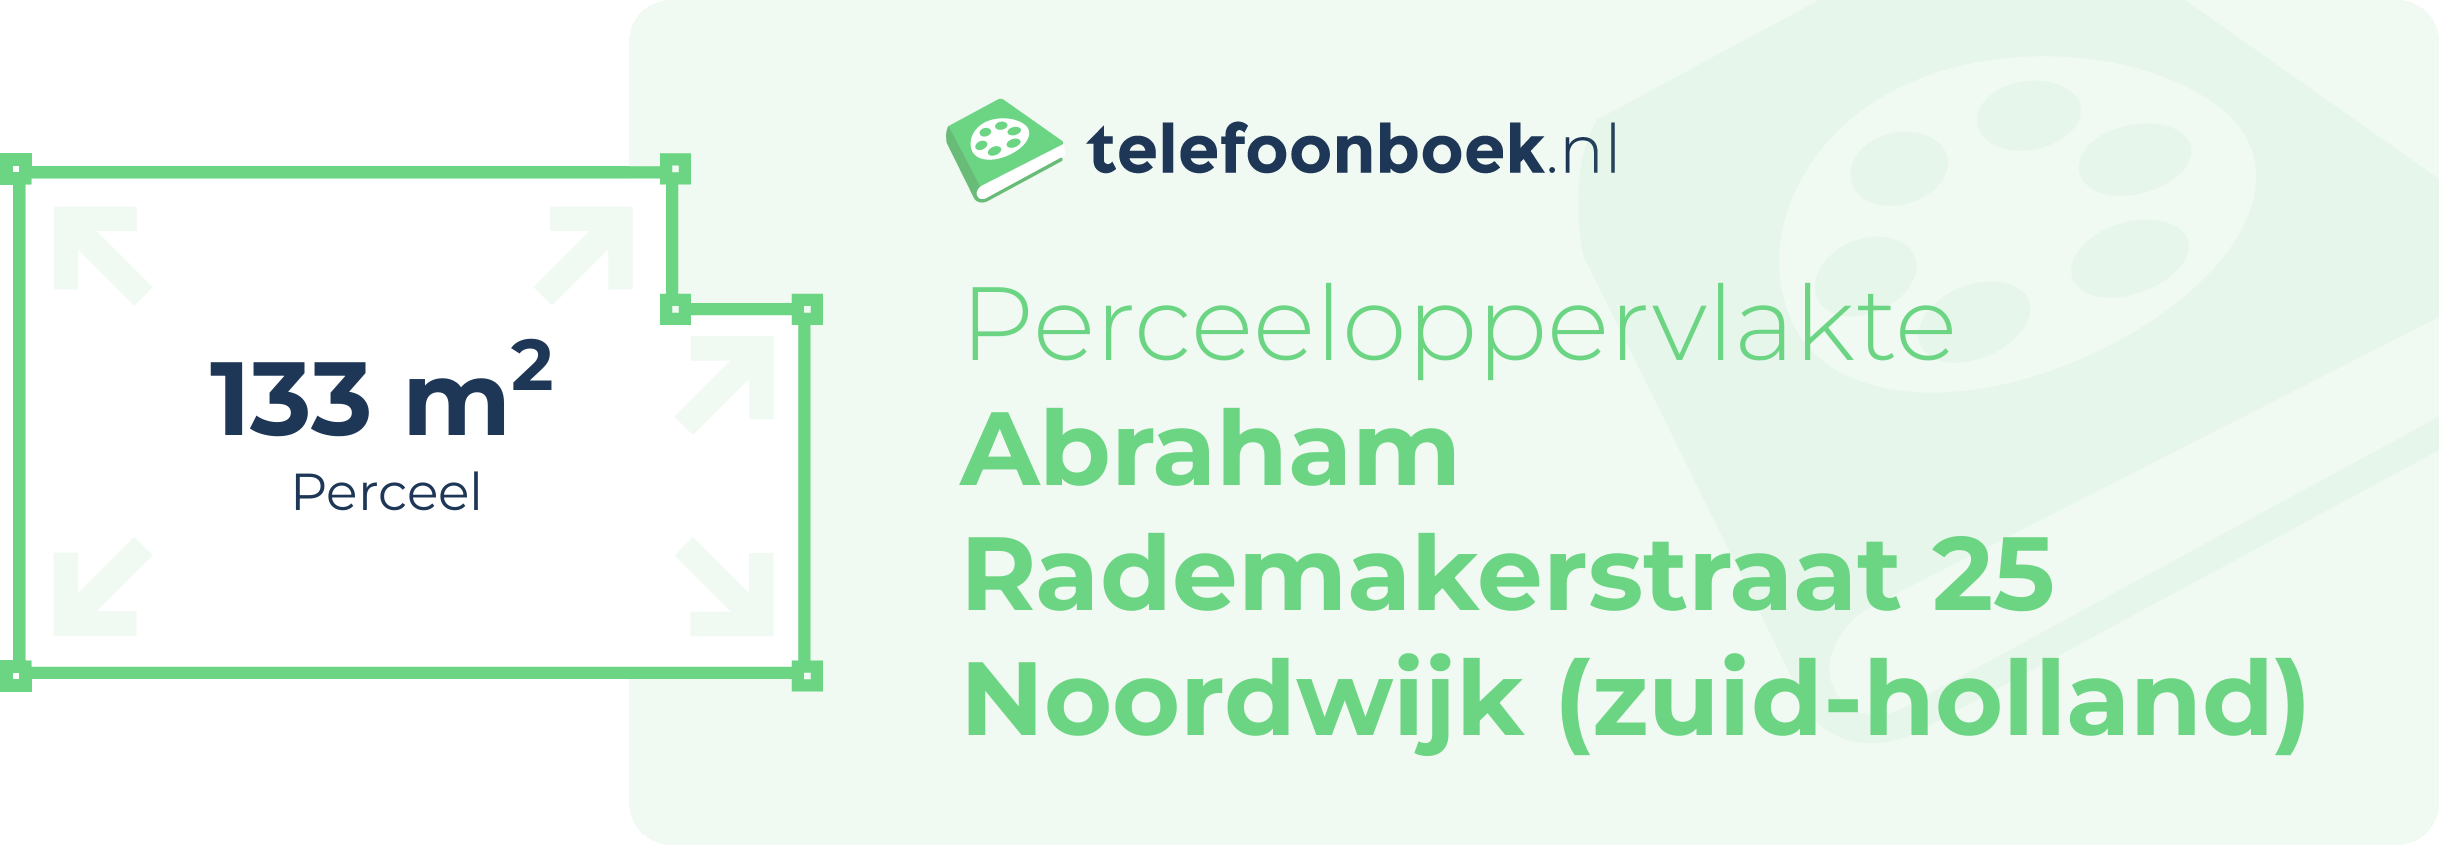 Perceeloppervlakte Abraham Rademakerstraat 25 Noordwijk (Zuid-Holland)